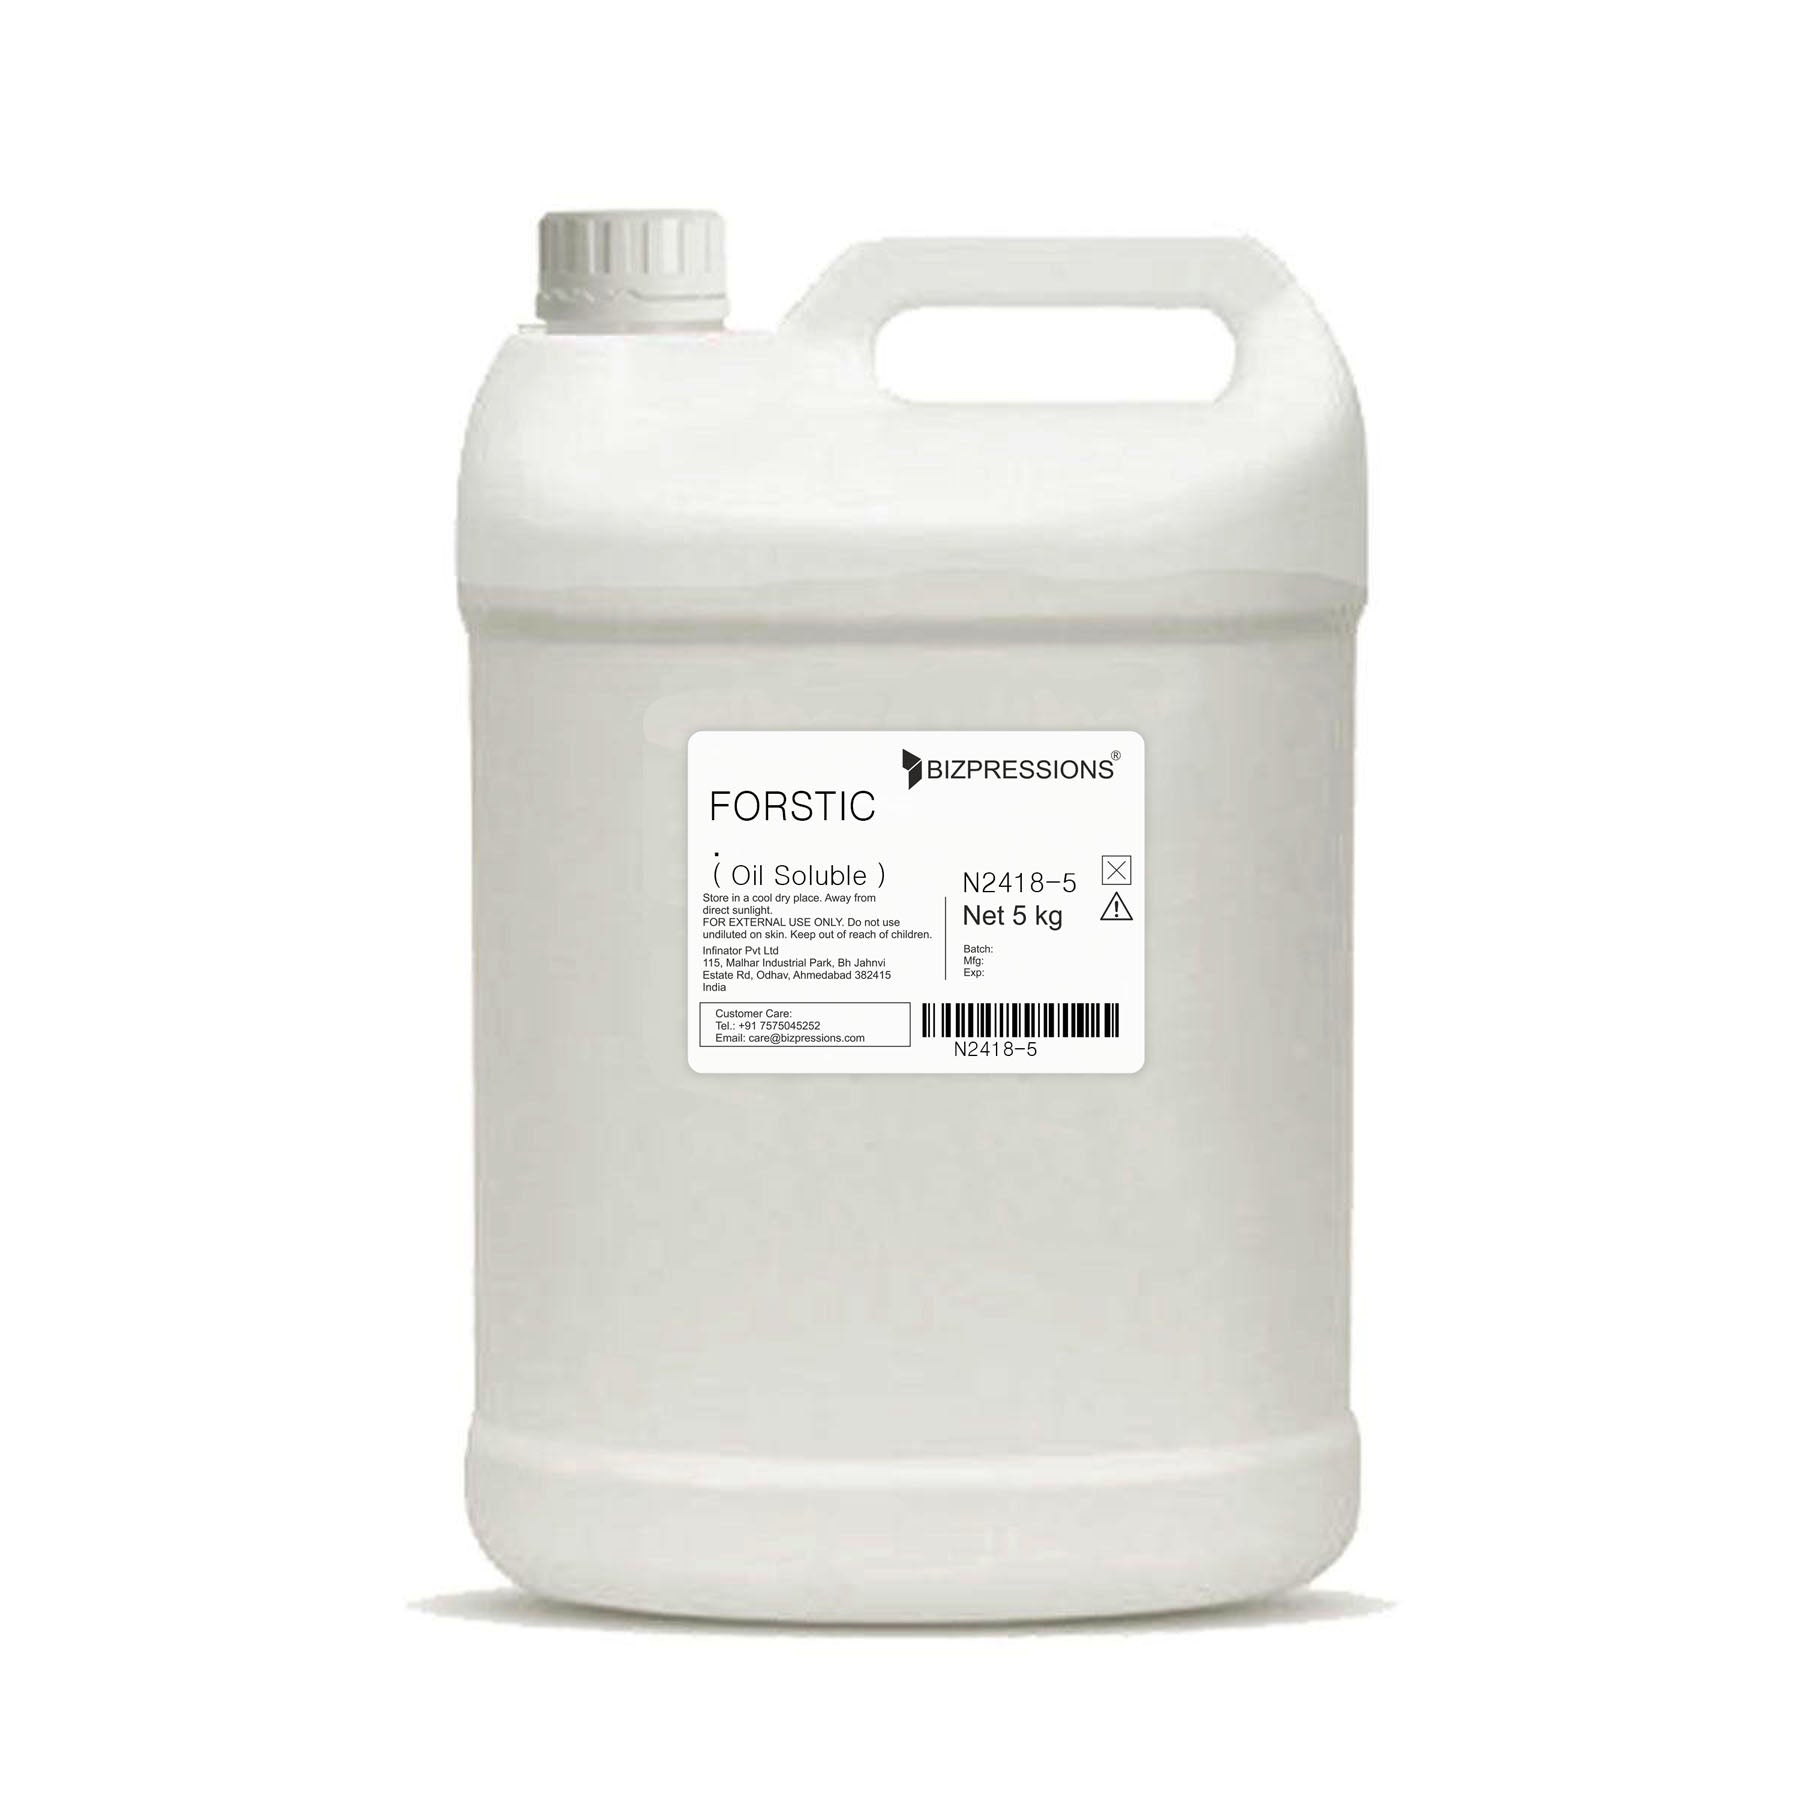 FORSTIC - Fragrance ( Oil Soluble ) - 5 kg